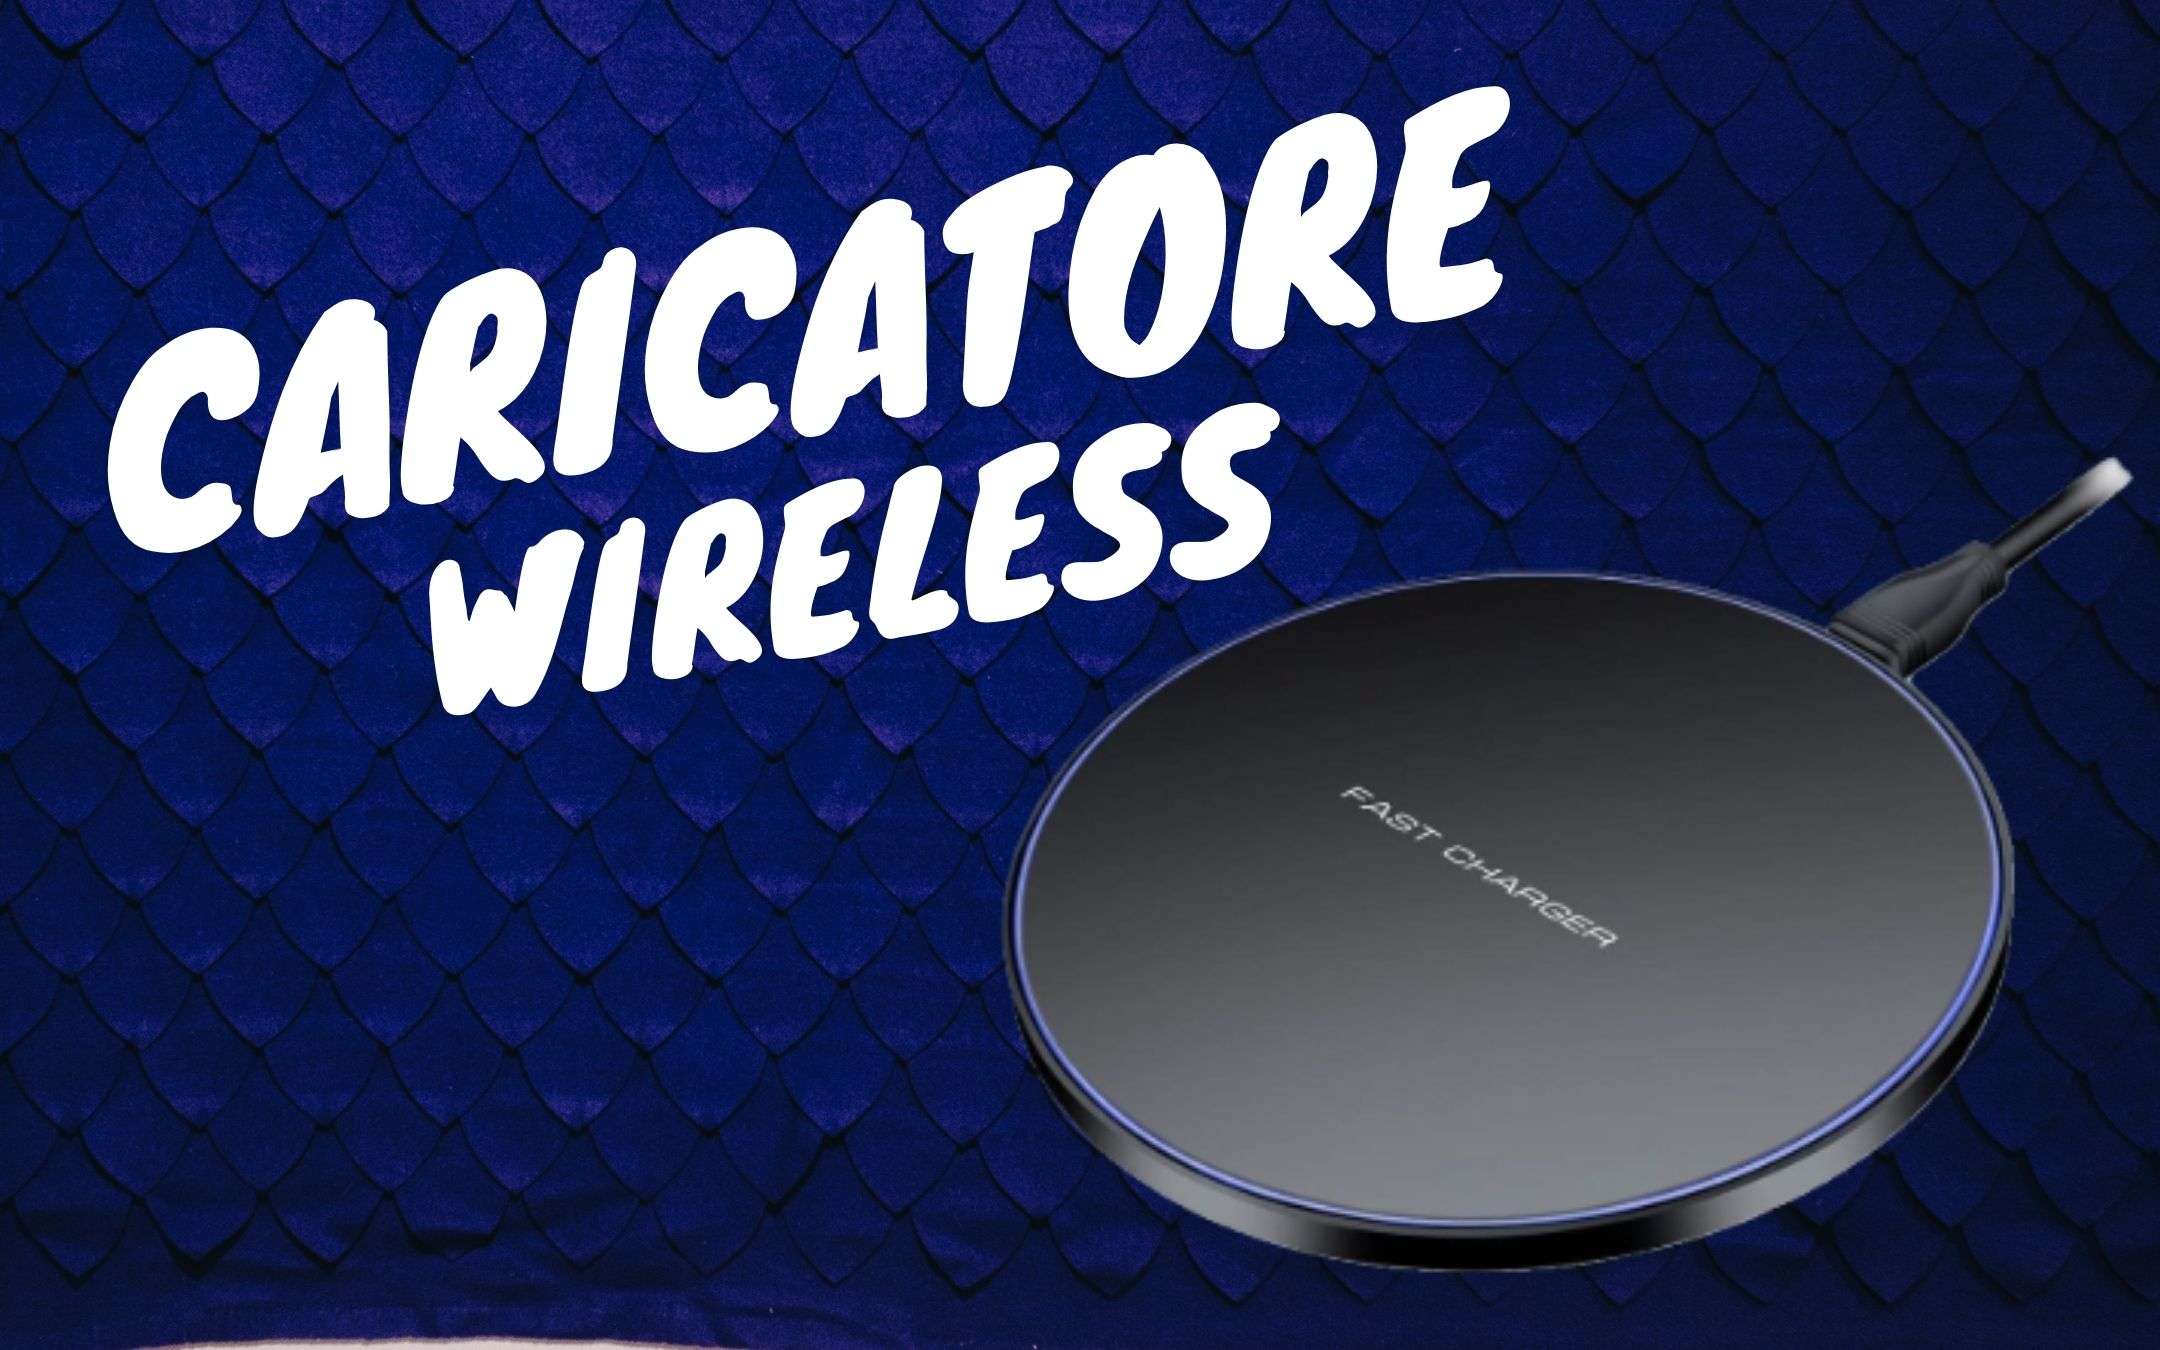 Caricatore Wireless a meno di 12 euro su Amazon!